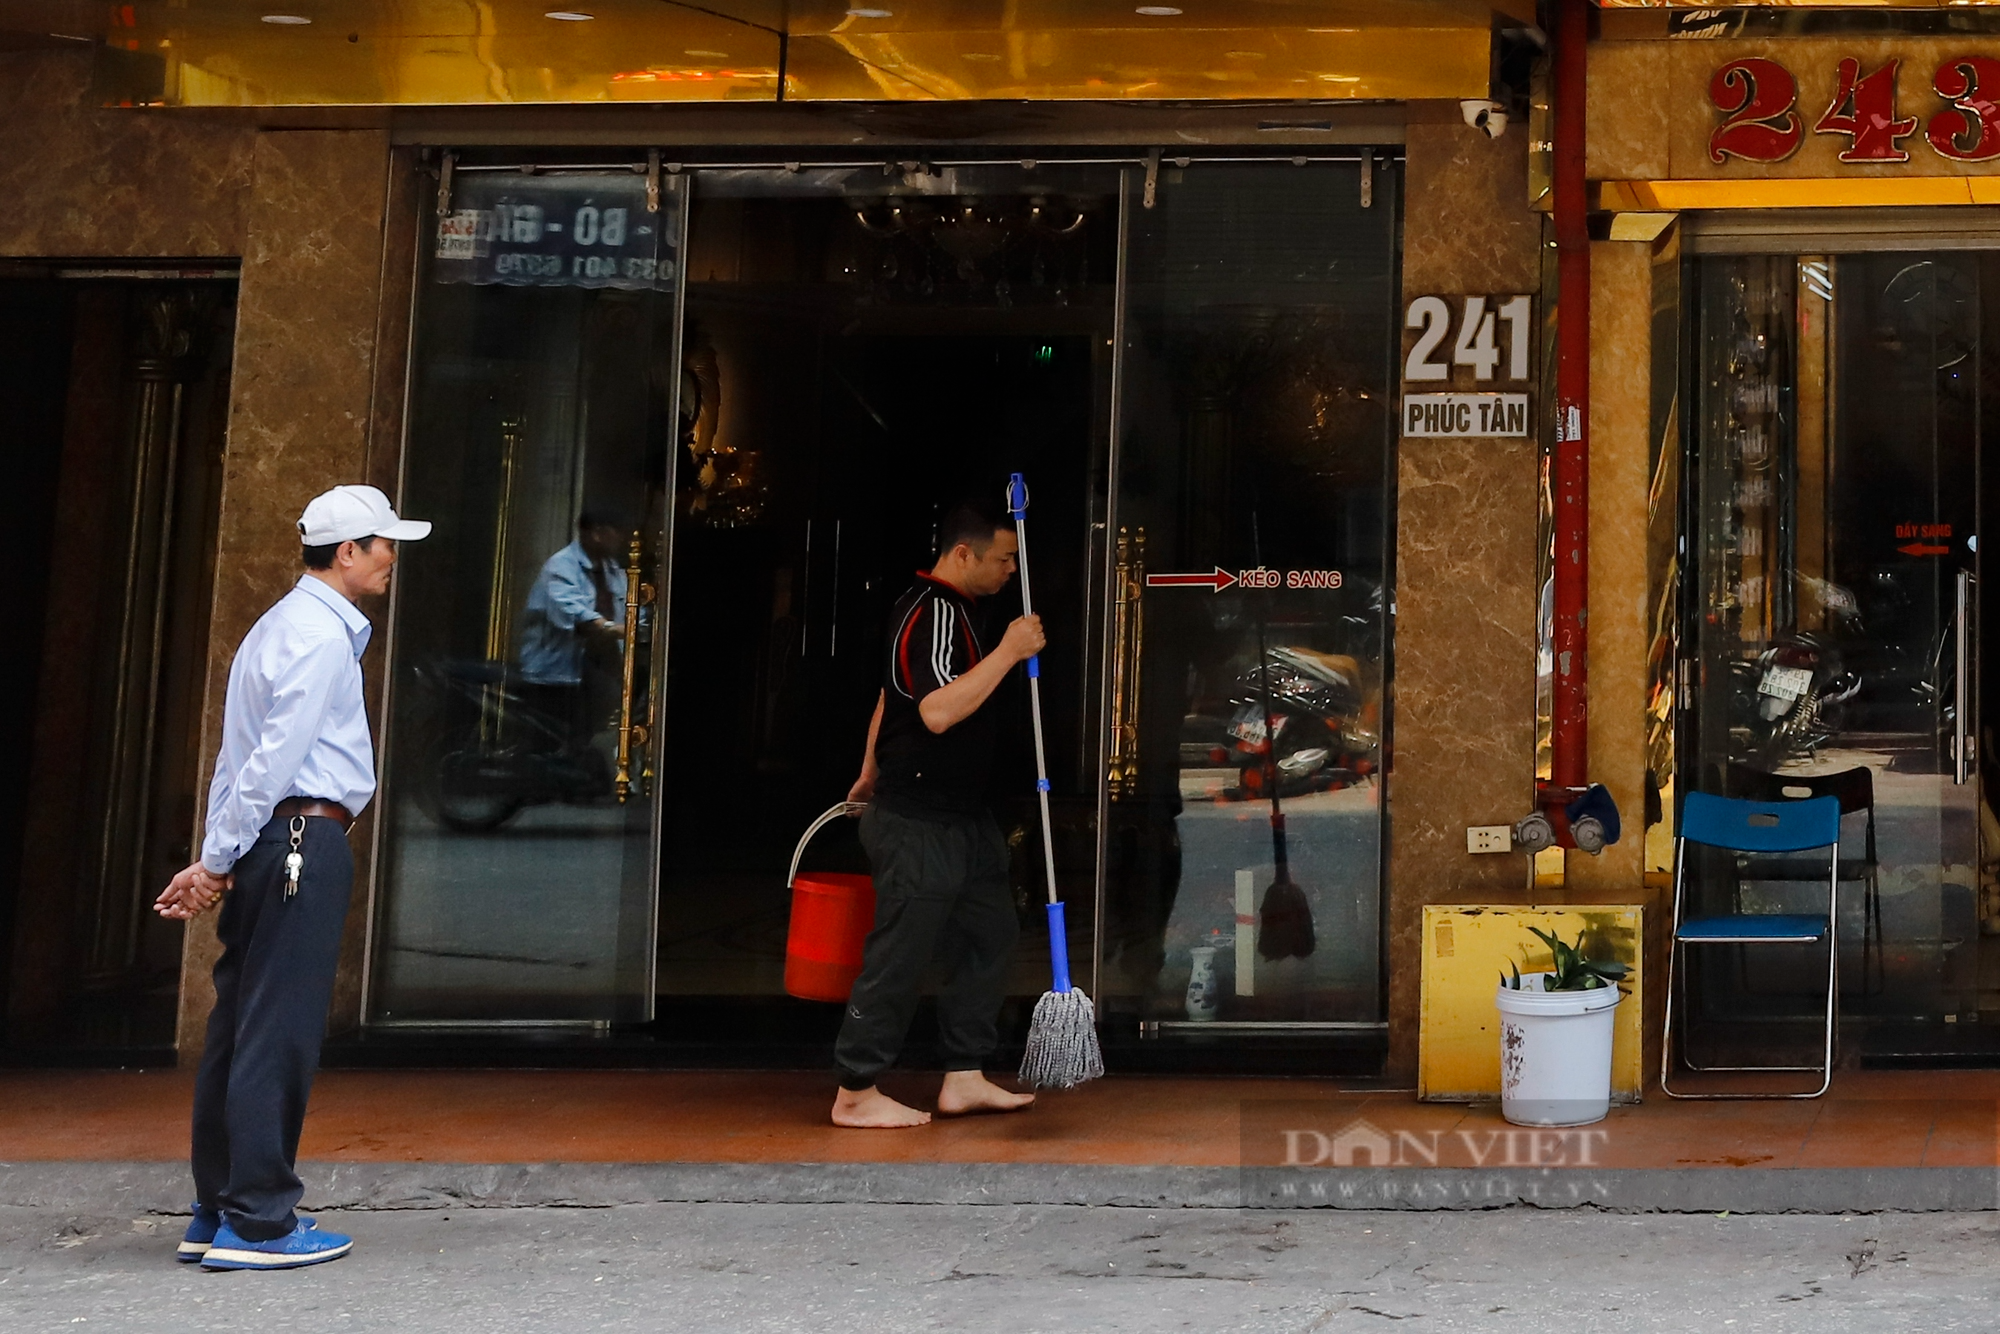 Ngừng kinh doanh quá lâu, nhiều quán karaoke tại Hà Nội treo biển nhà hàng - Ảnh 5.